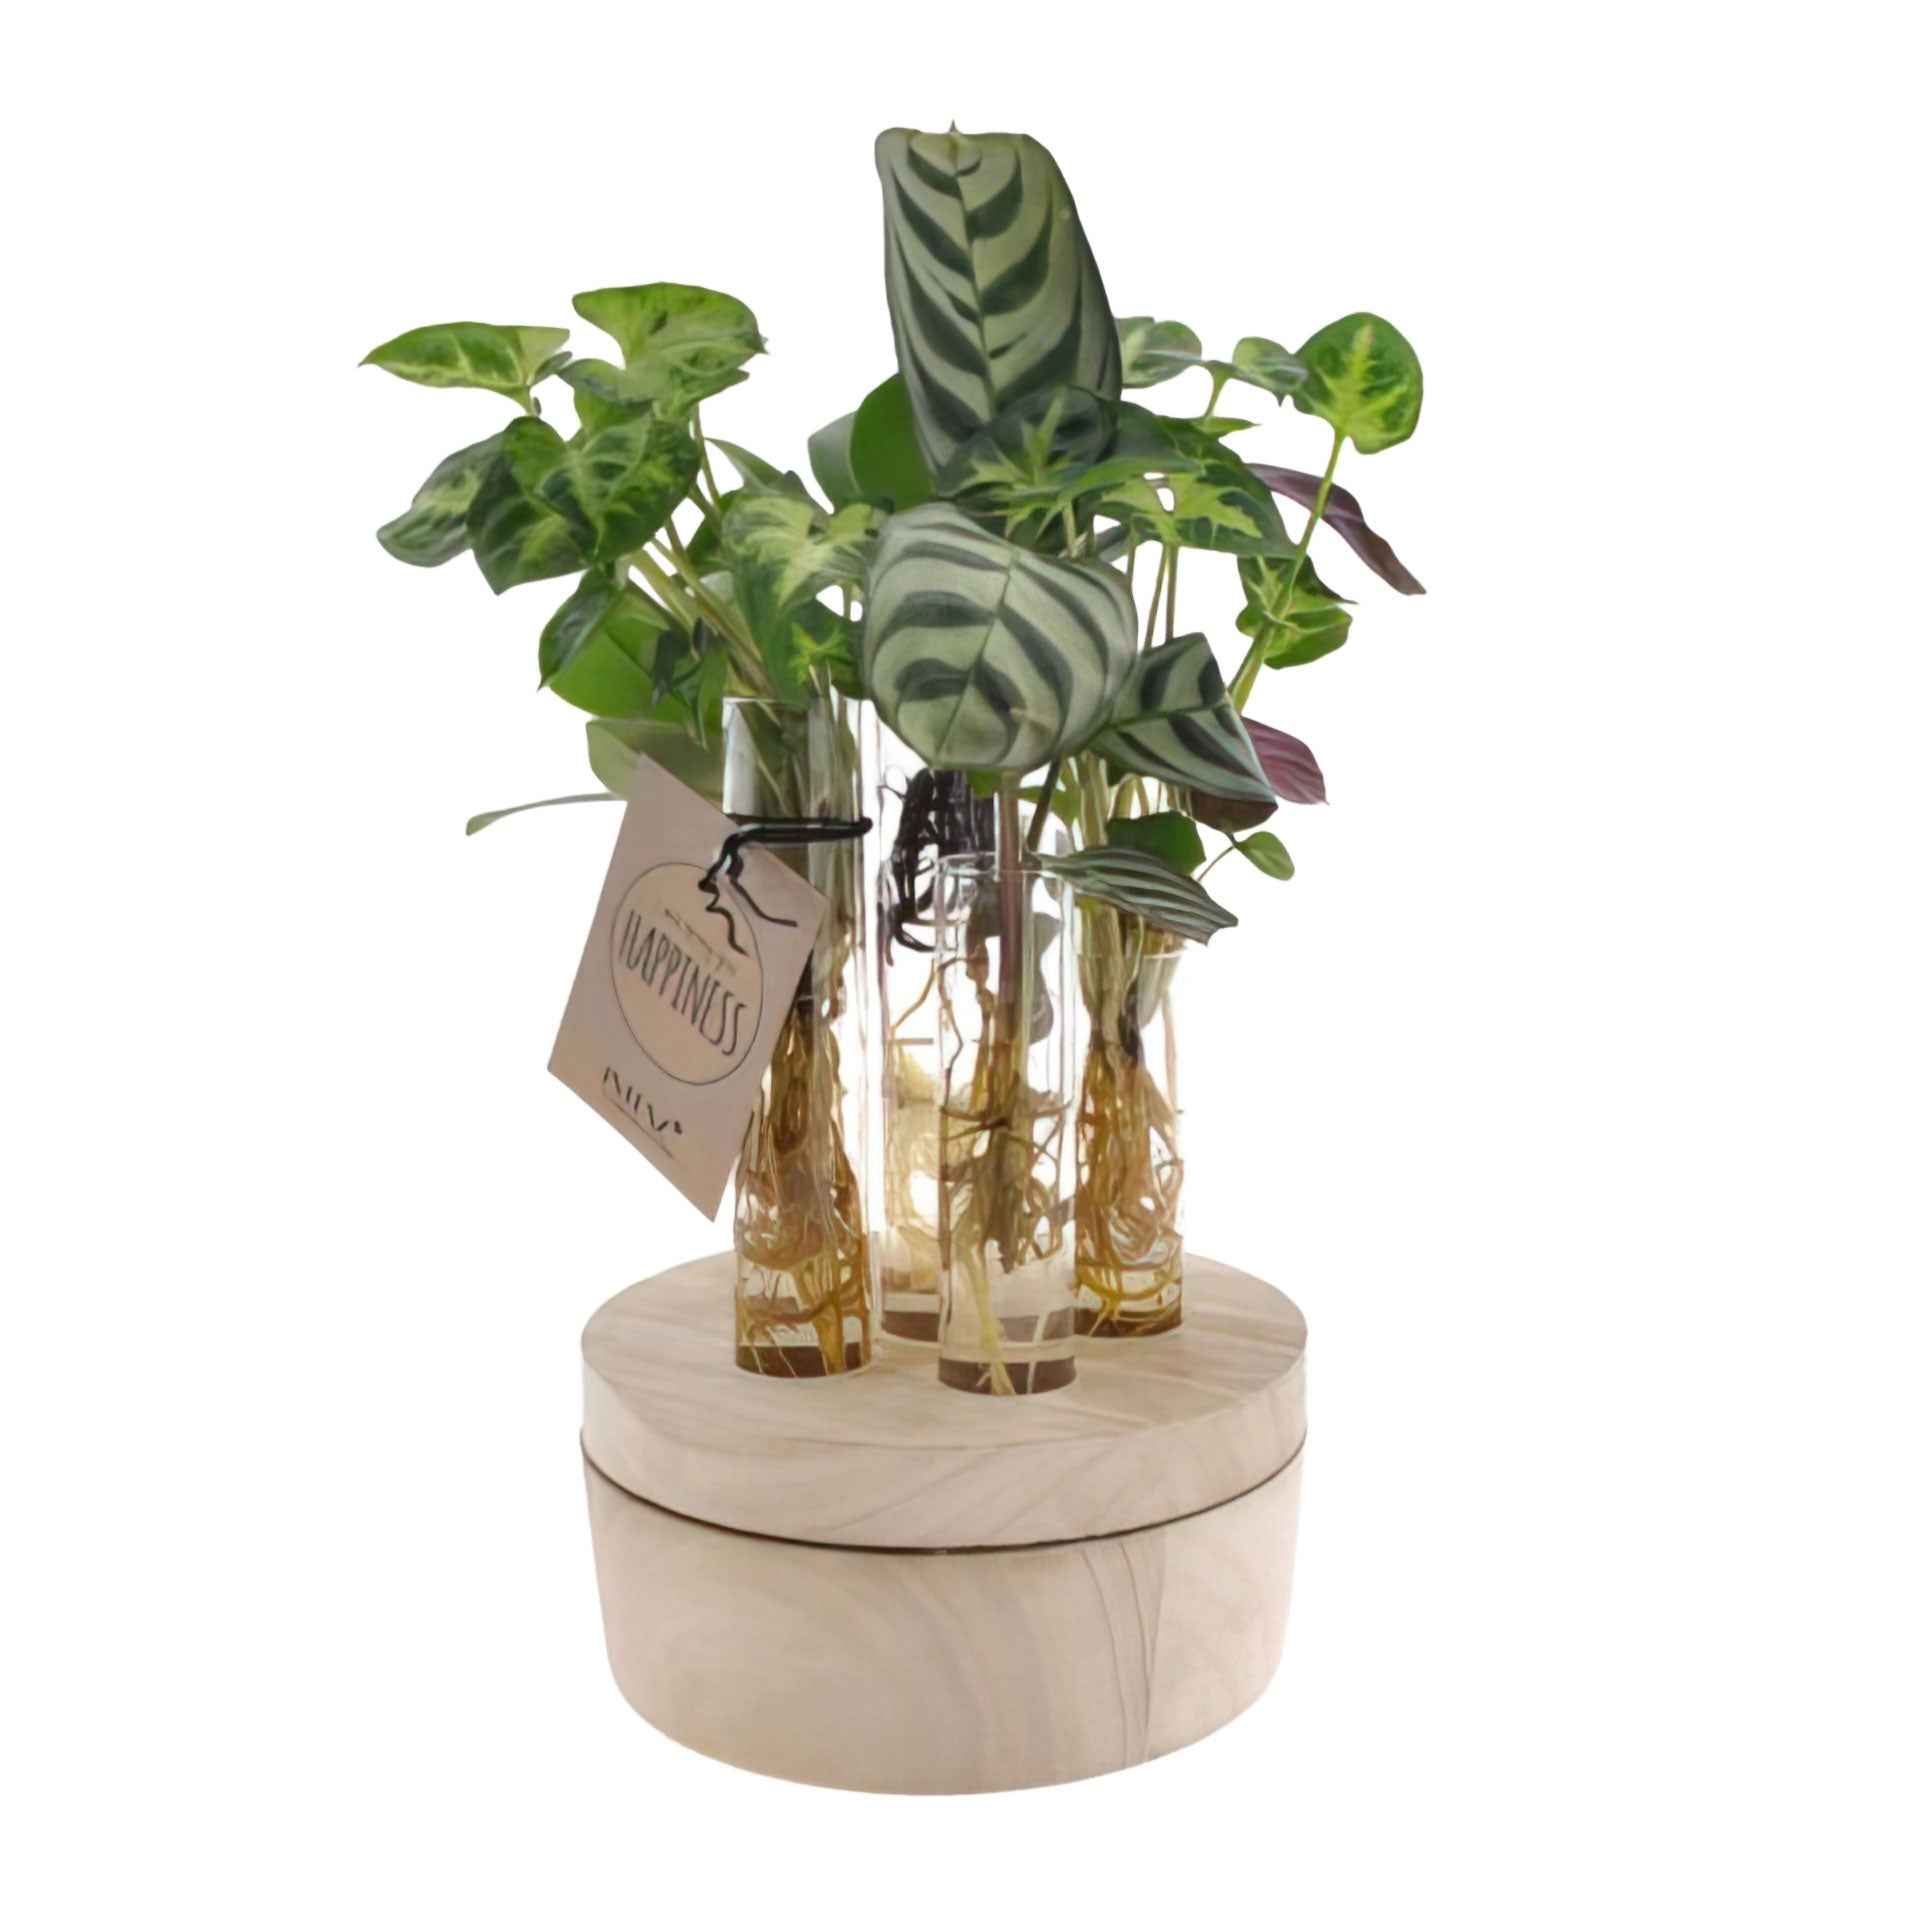 Stecklingsmix New York im Glas mit LED-Beleuchtung - Hydroponik - 1x Pflanze: Lieferhöhe 20-30 cm + Glas (6x Vase): 19 cm - Beliebte grüne Zimmerpflanzen - undefined